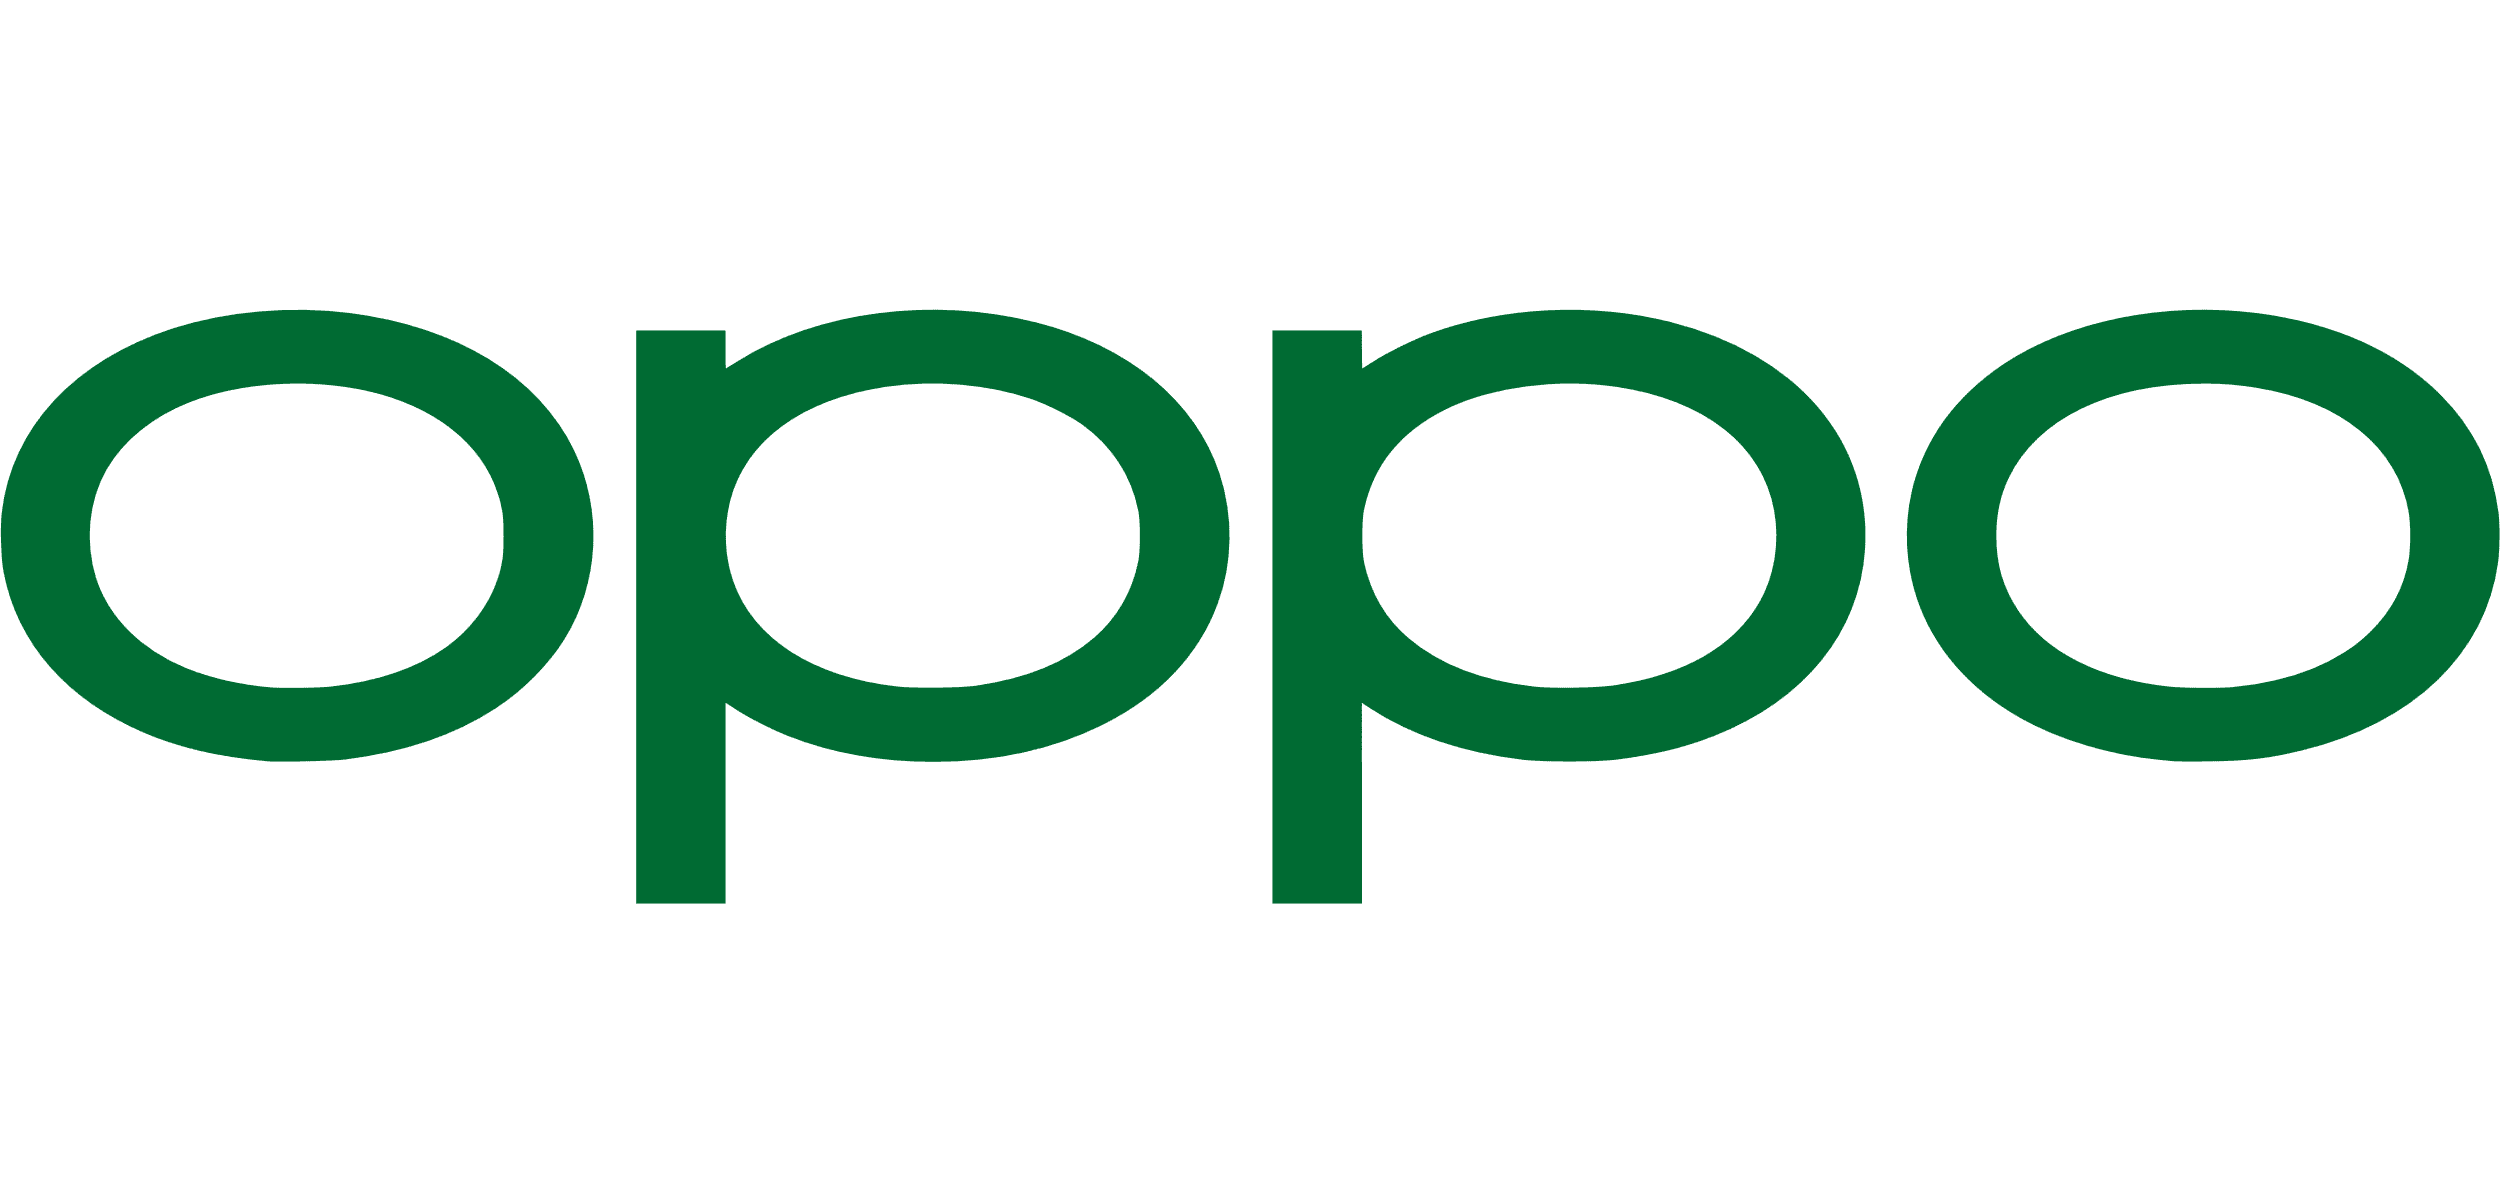 Opp Phone Logo, Wardrobe Furniture Factory